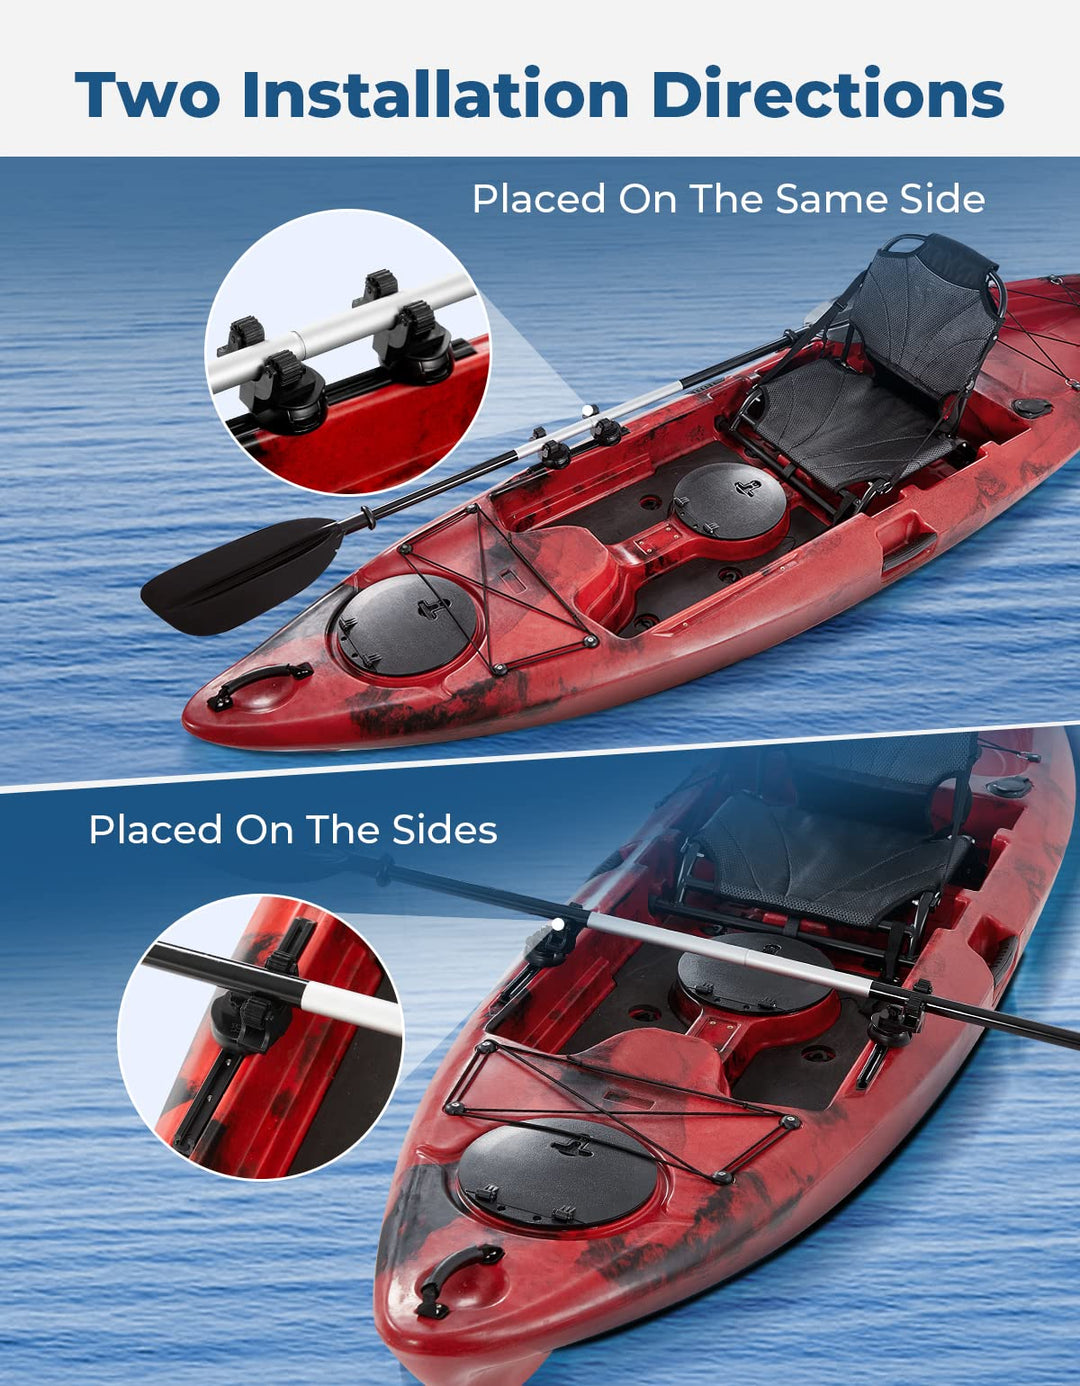 2pcs Kayak Paddle Holder